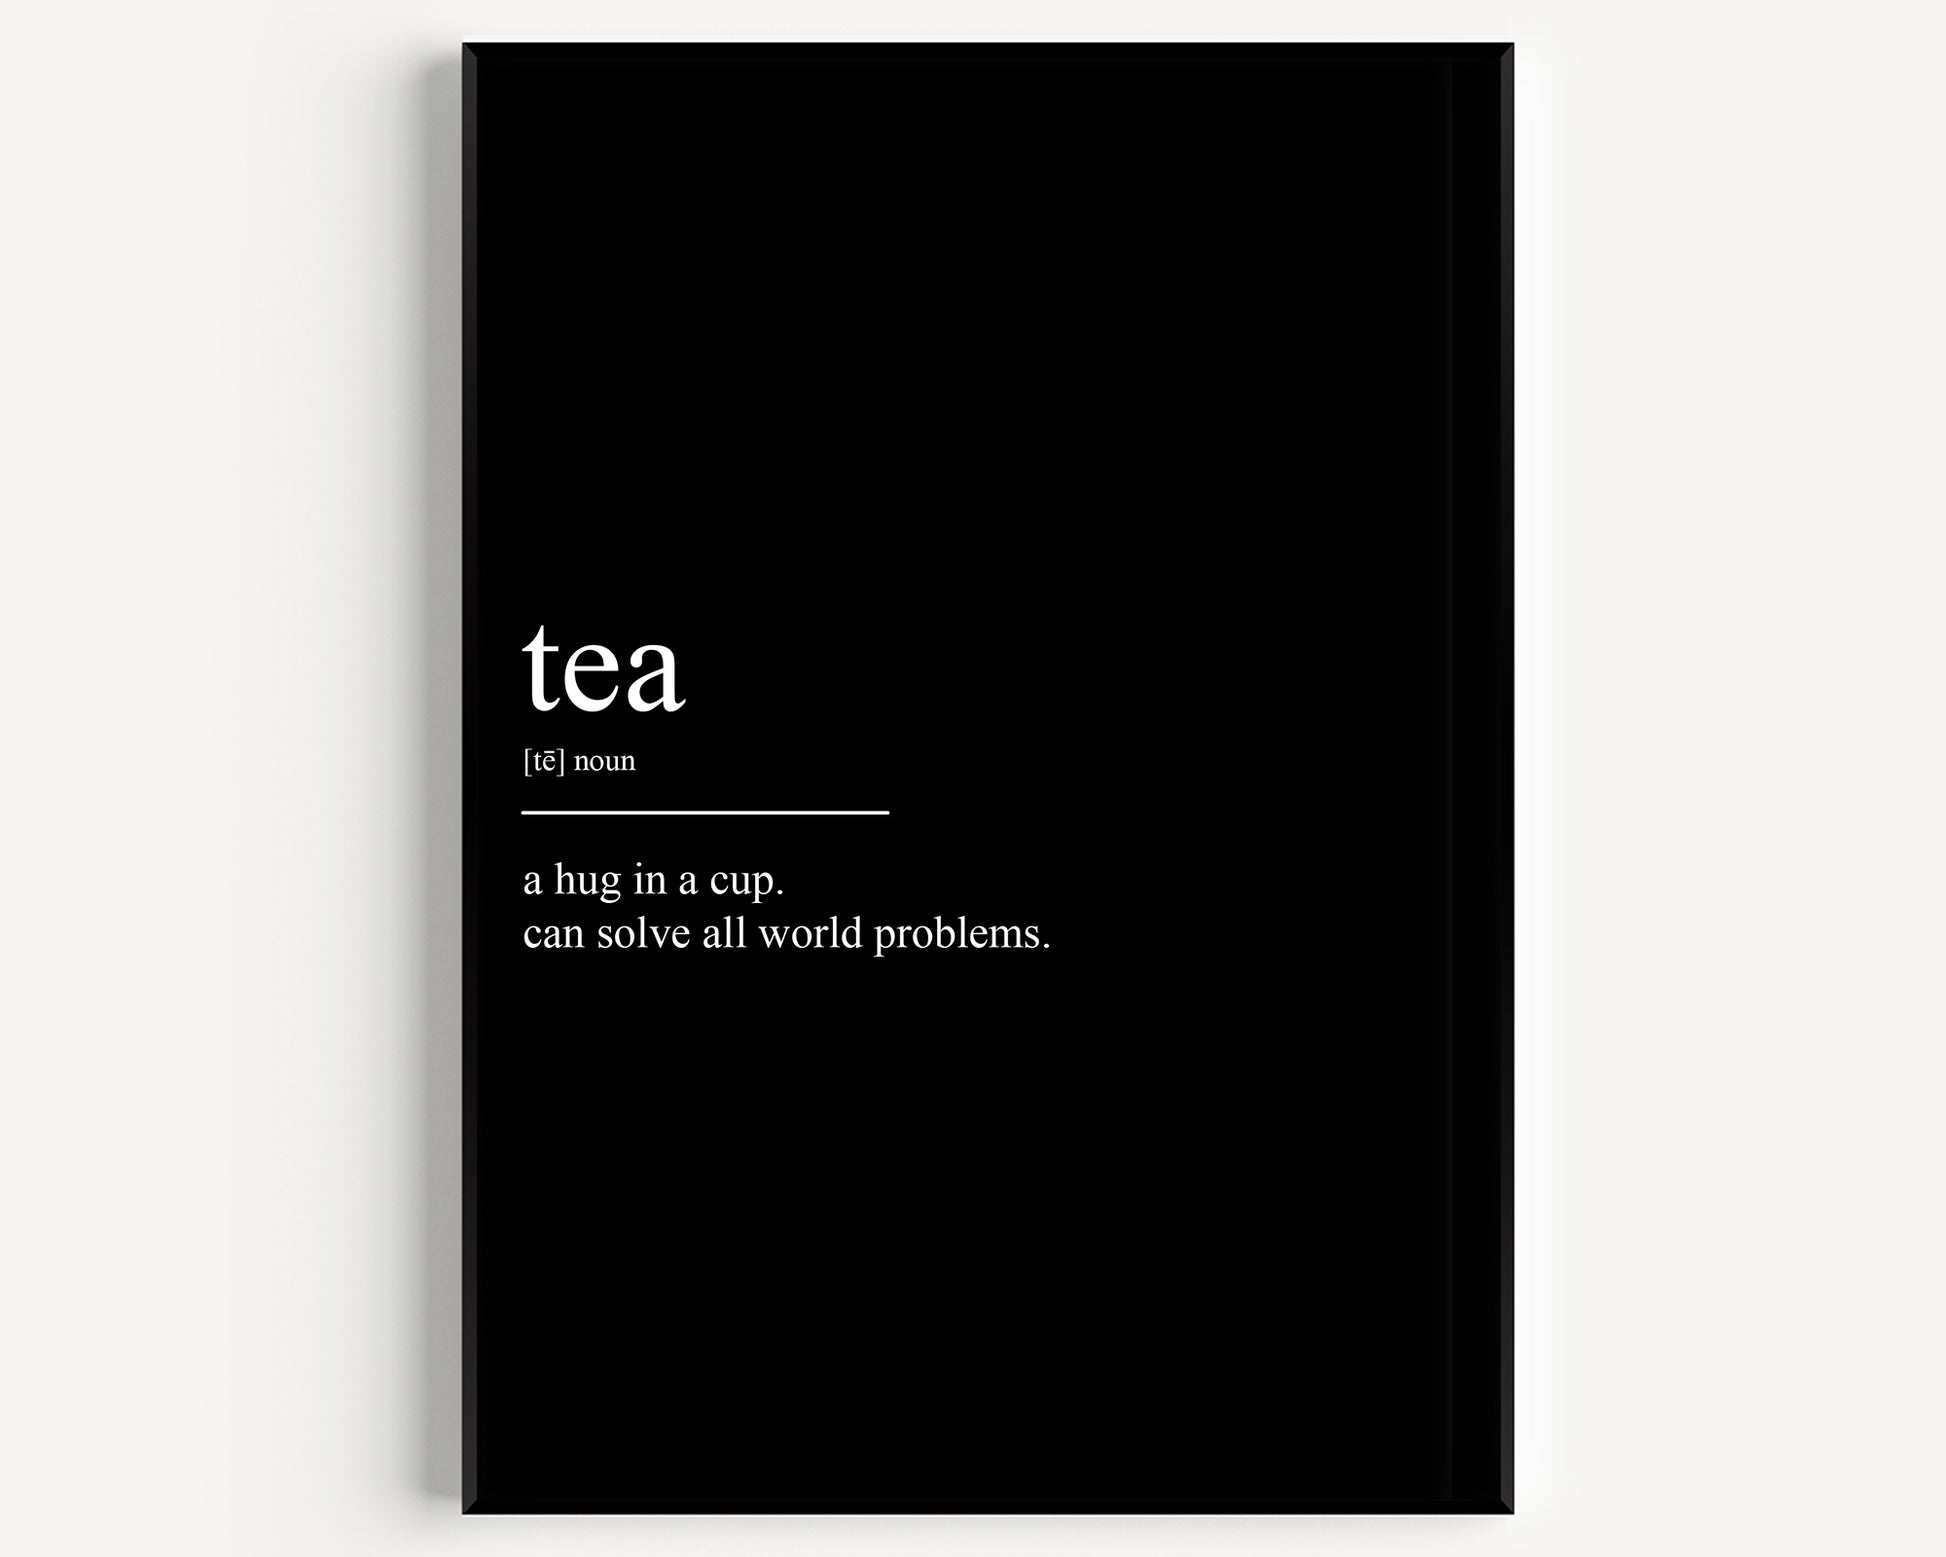 Tea Definition Print V3 - Magic Posters